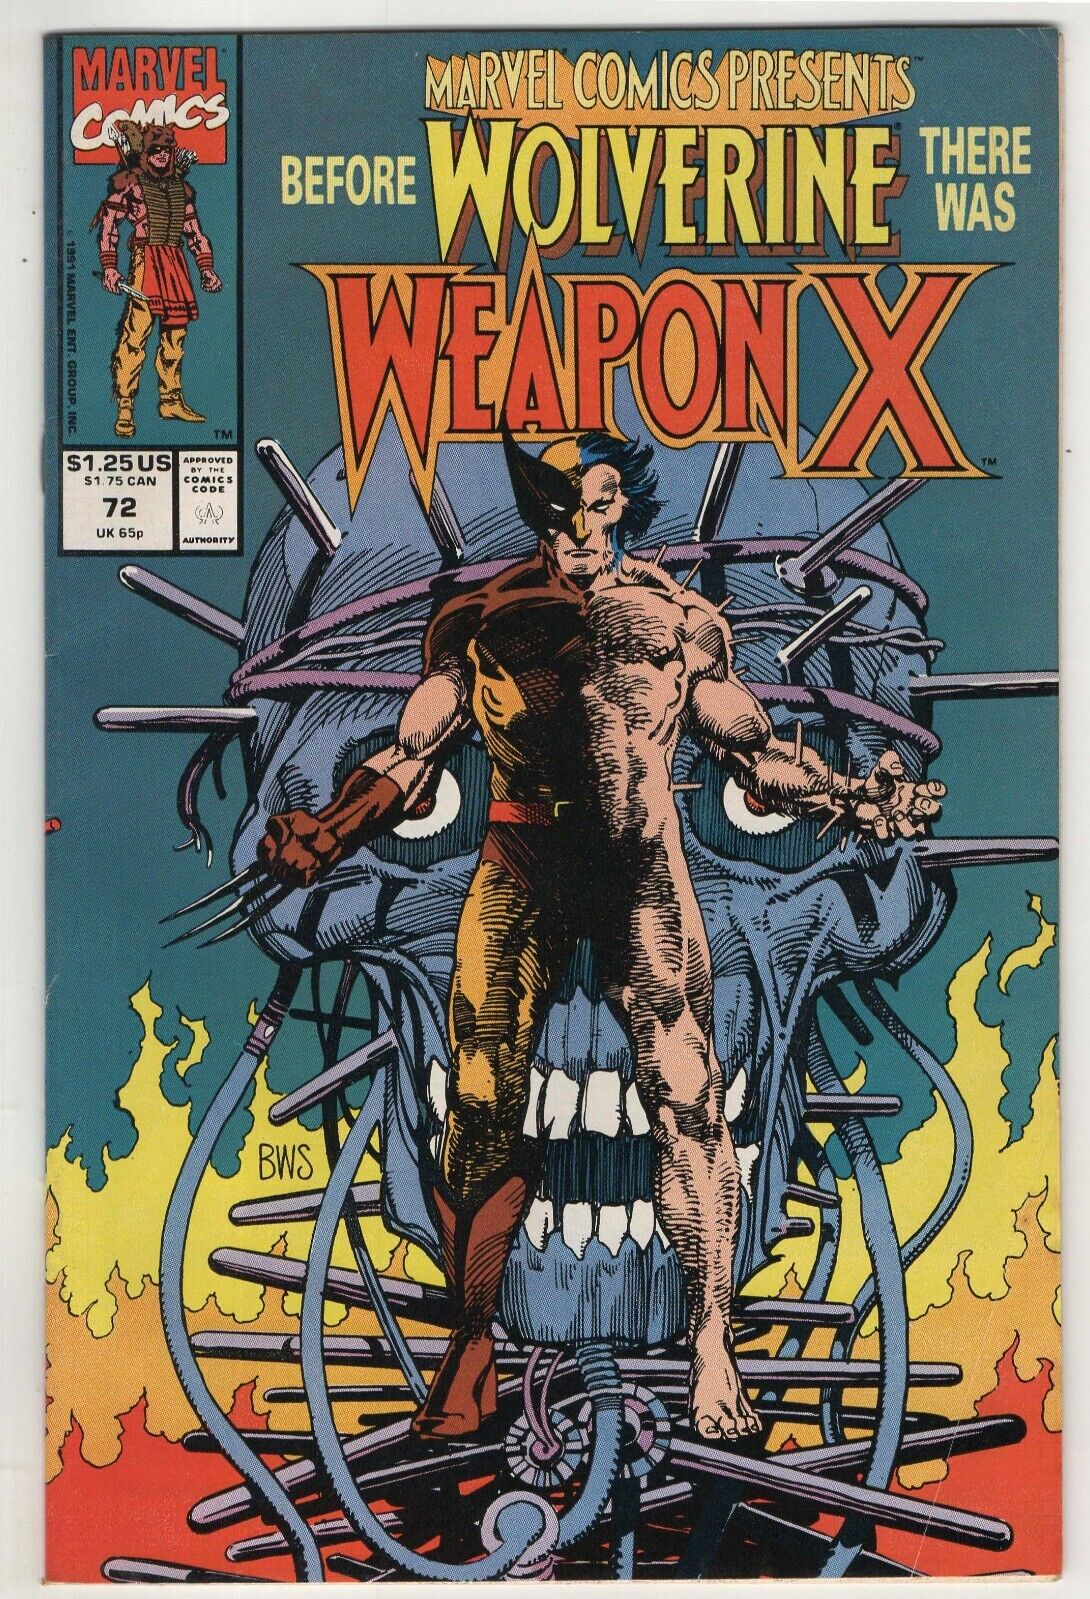 Marvel Comics Presents Weapon X #72 - Prologue